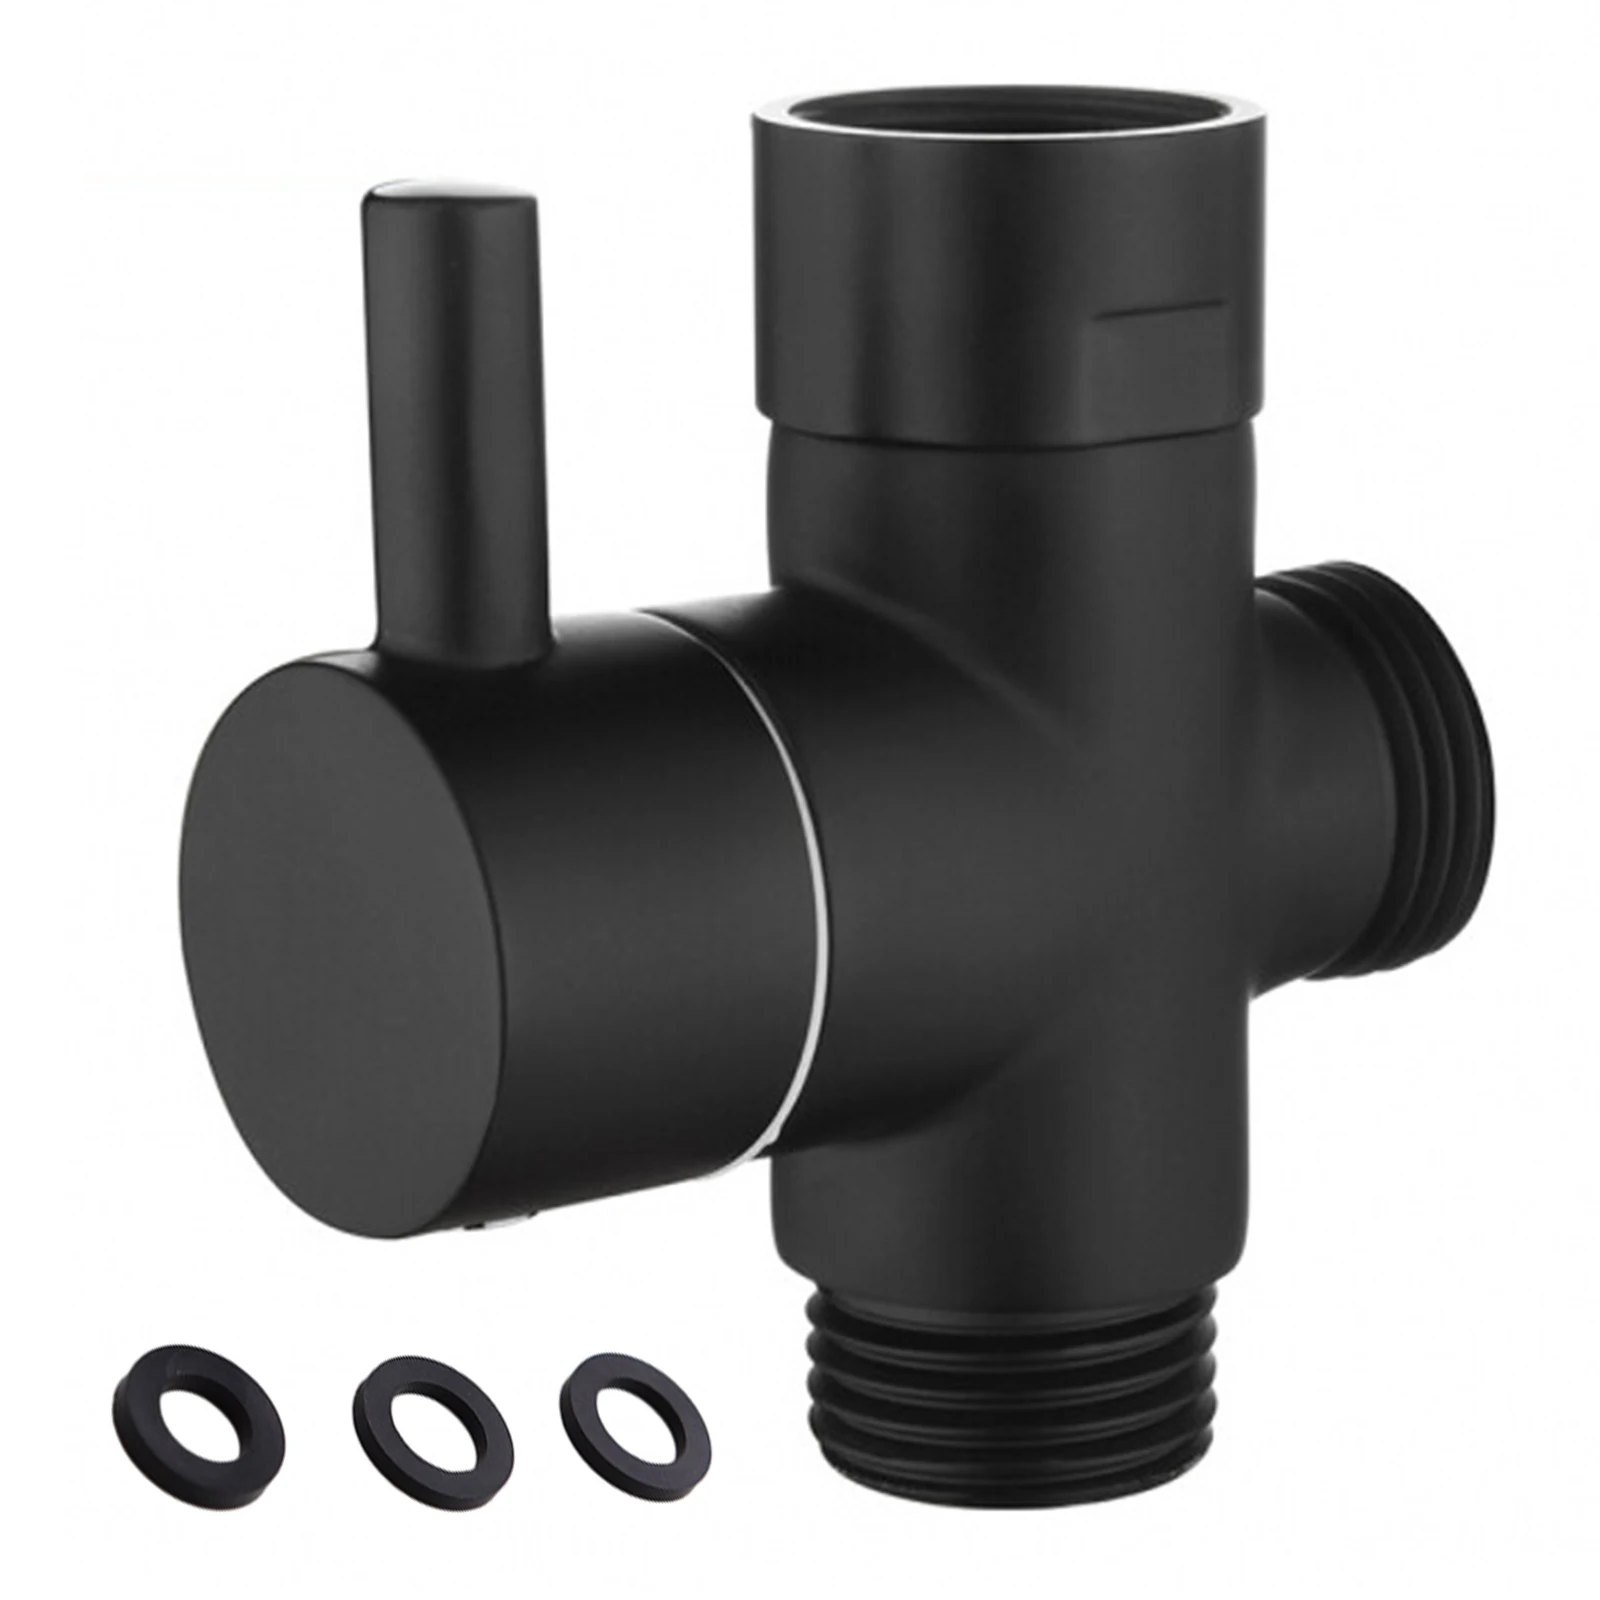 

1 Pcs Black Brass Shower Arm Adapter G1/2’’ G3/4 Shower Diverter Valve For Handheld Shower Head Bathroom Kitchen Accessories